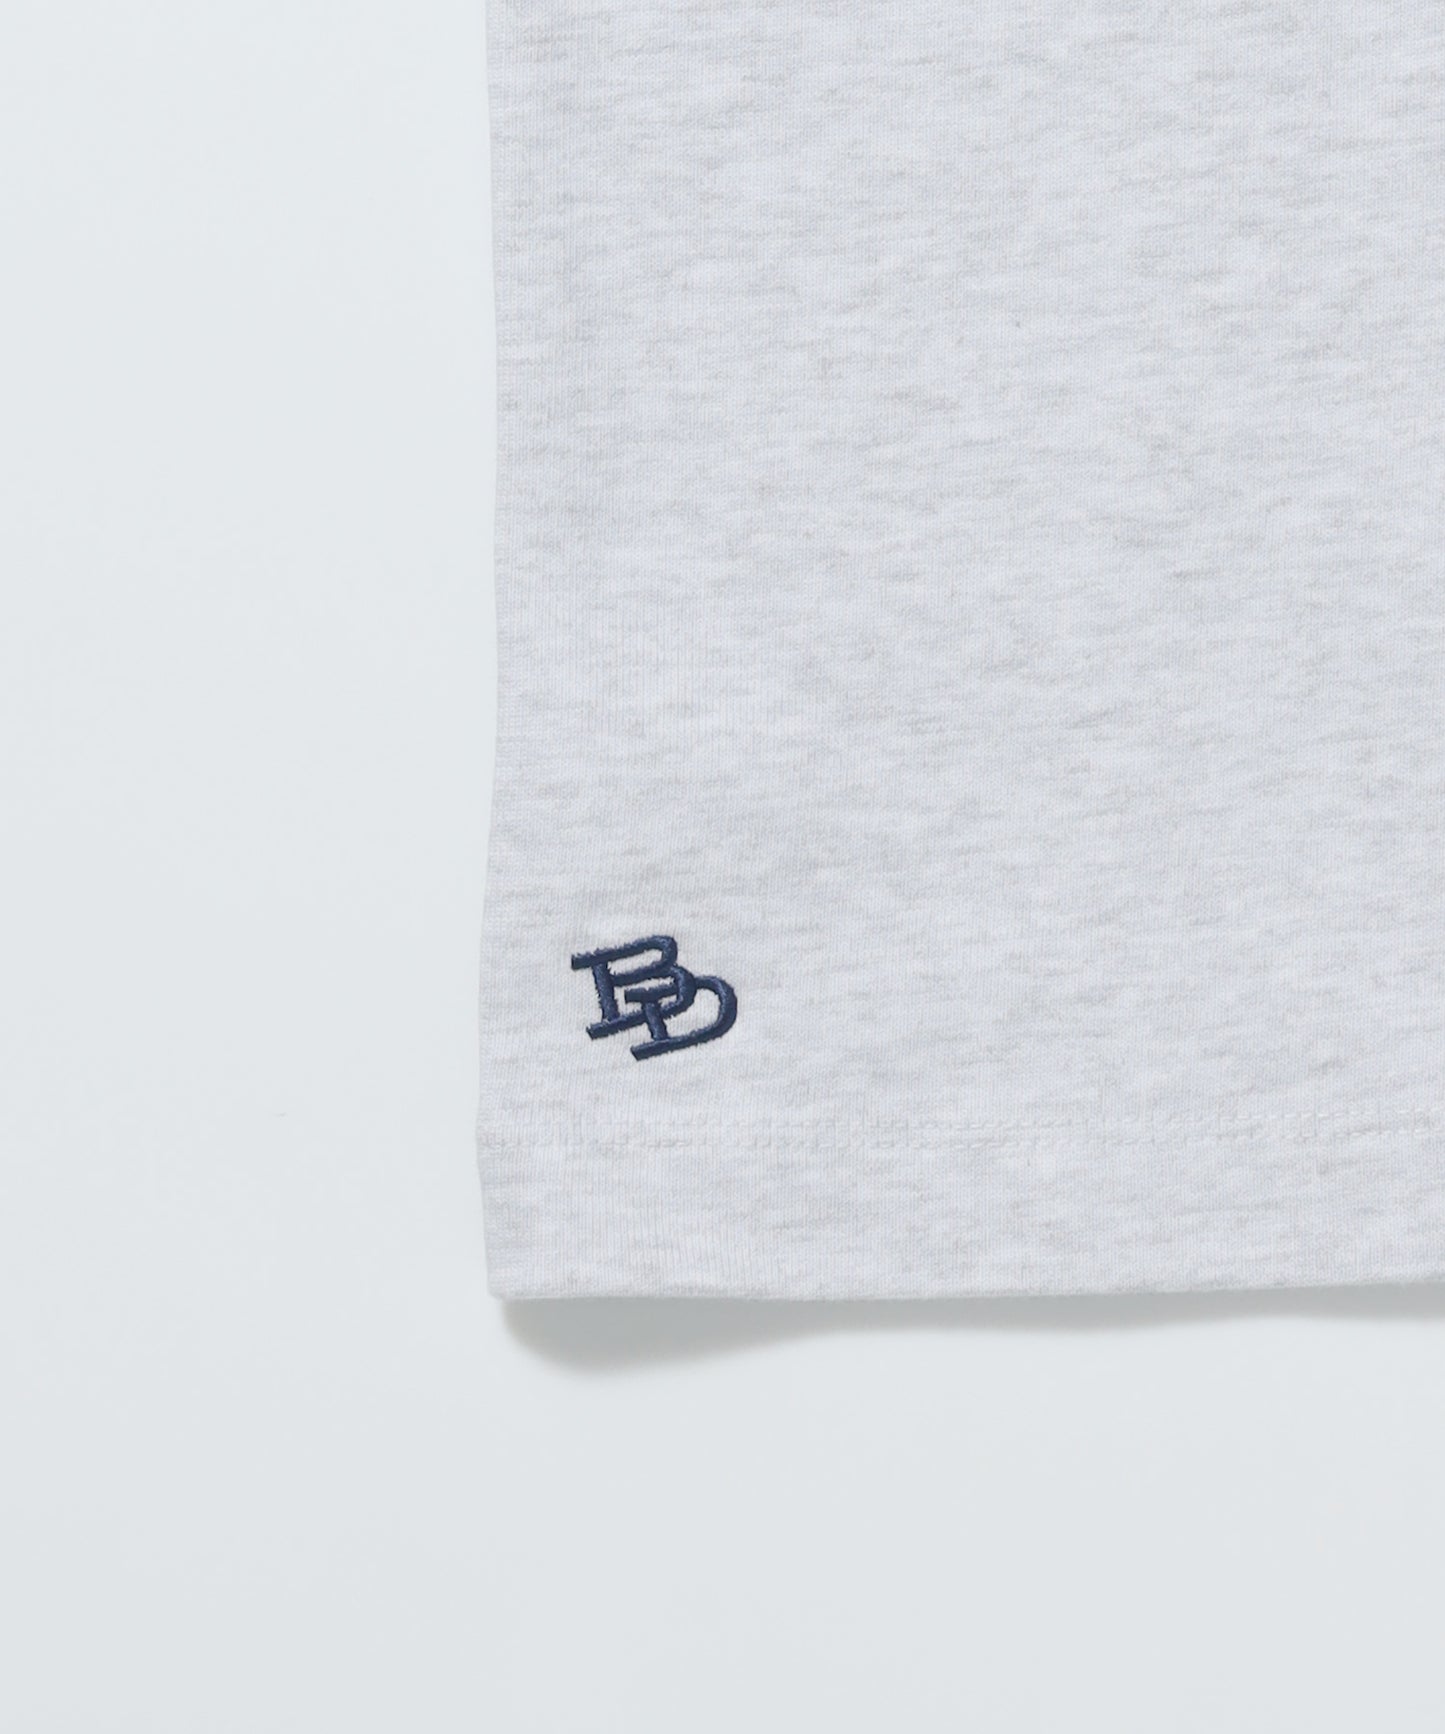 BEN'S EMB TEE / スケーター ワンポイント Tシャツ シンプル スクウェアロゴ 刺繍 半袖 オフホワイト